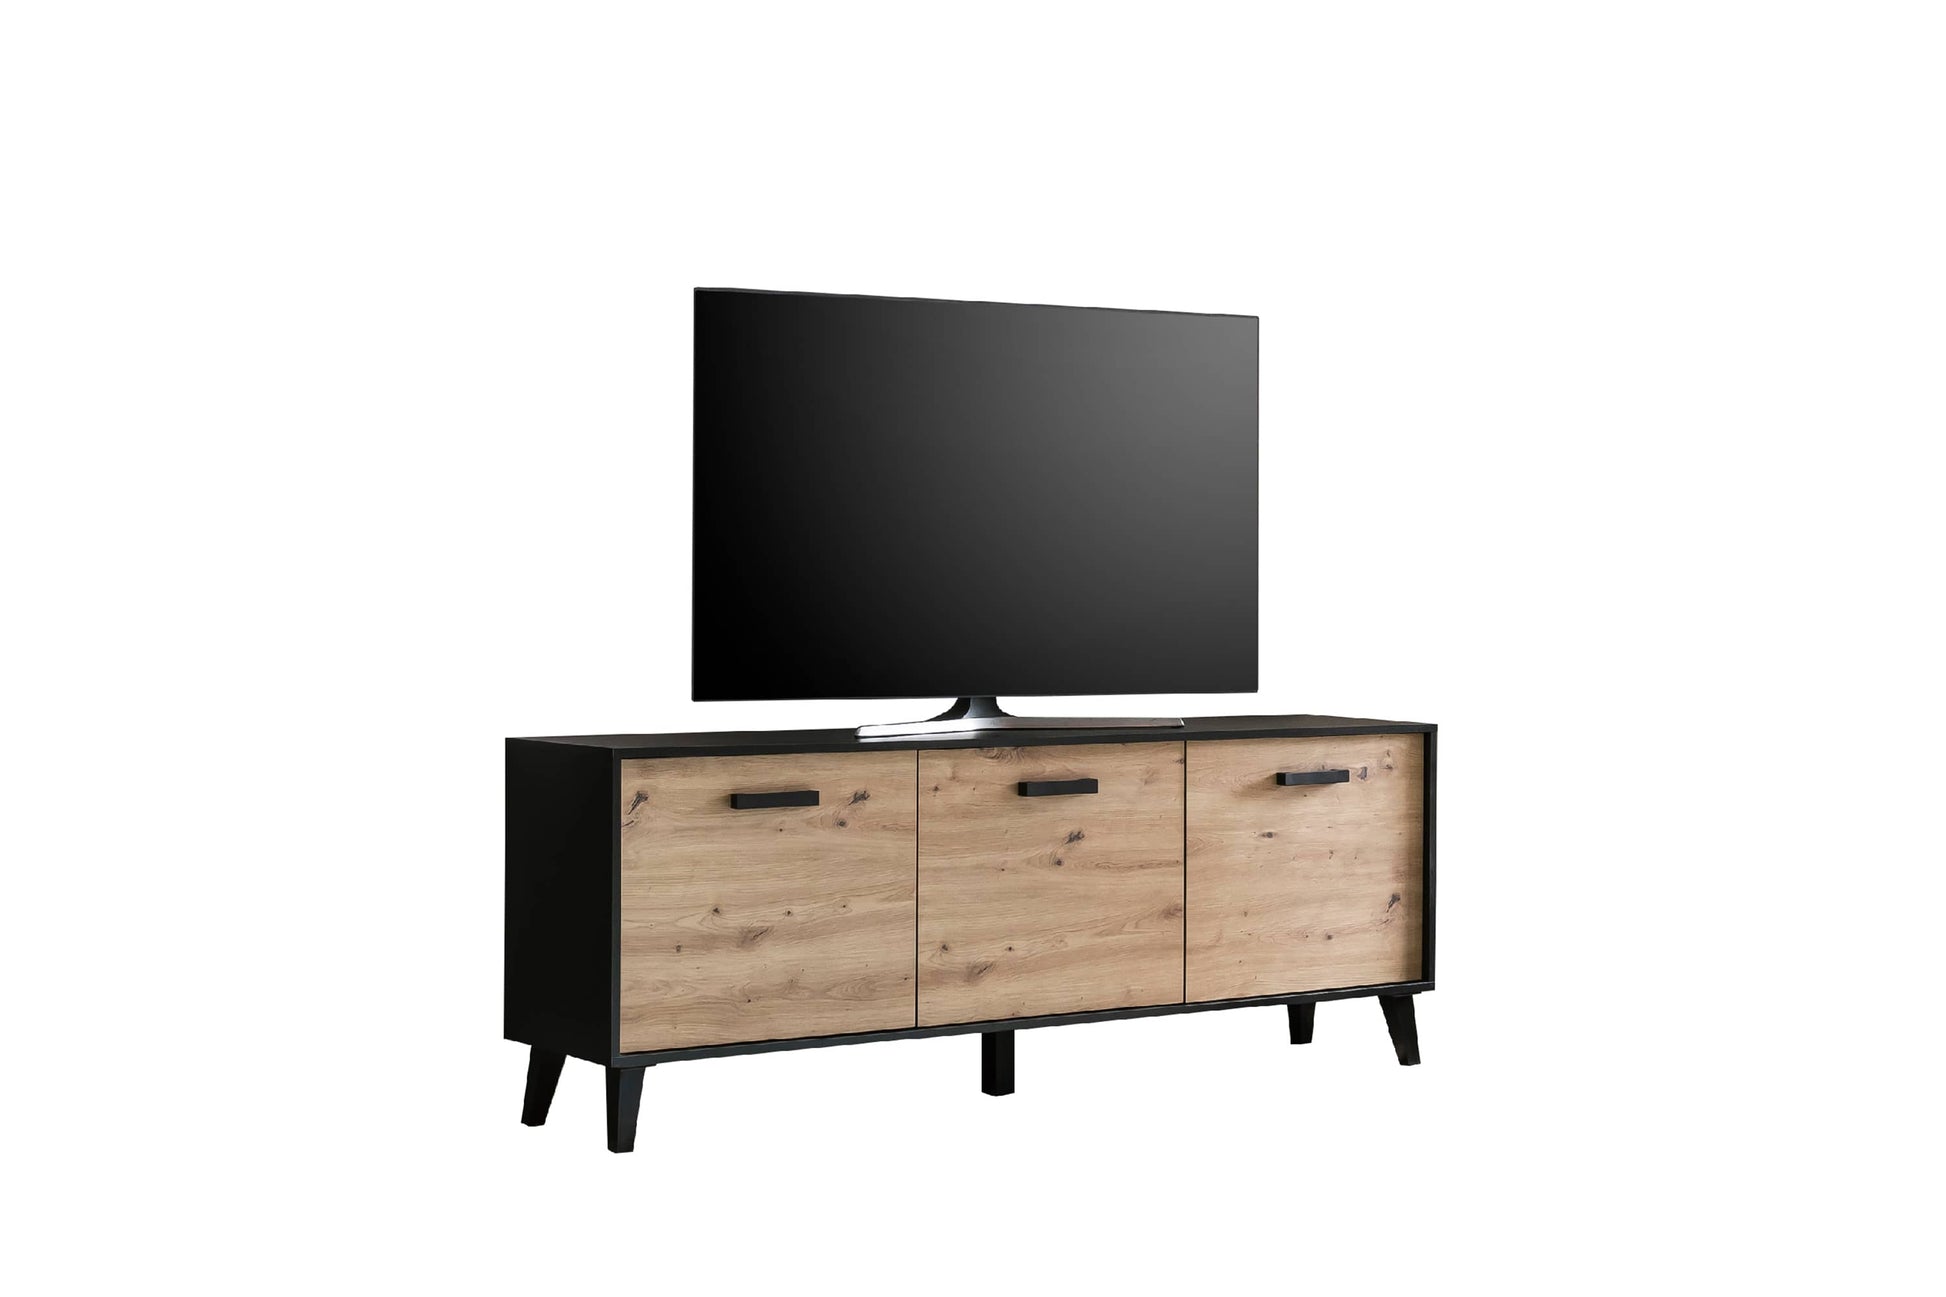 Artona 02 TV Cabinet-Living Room TV Cabinet